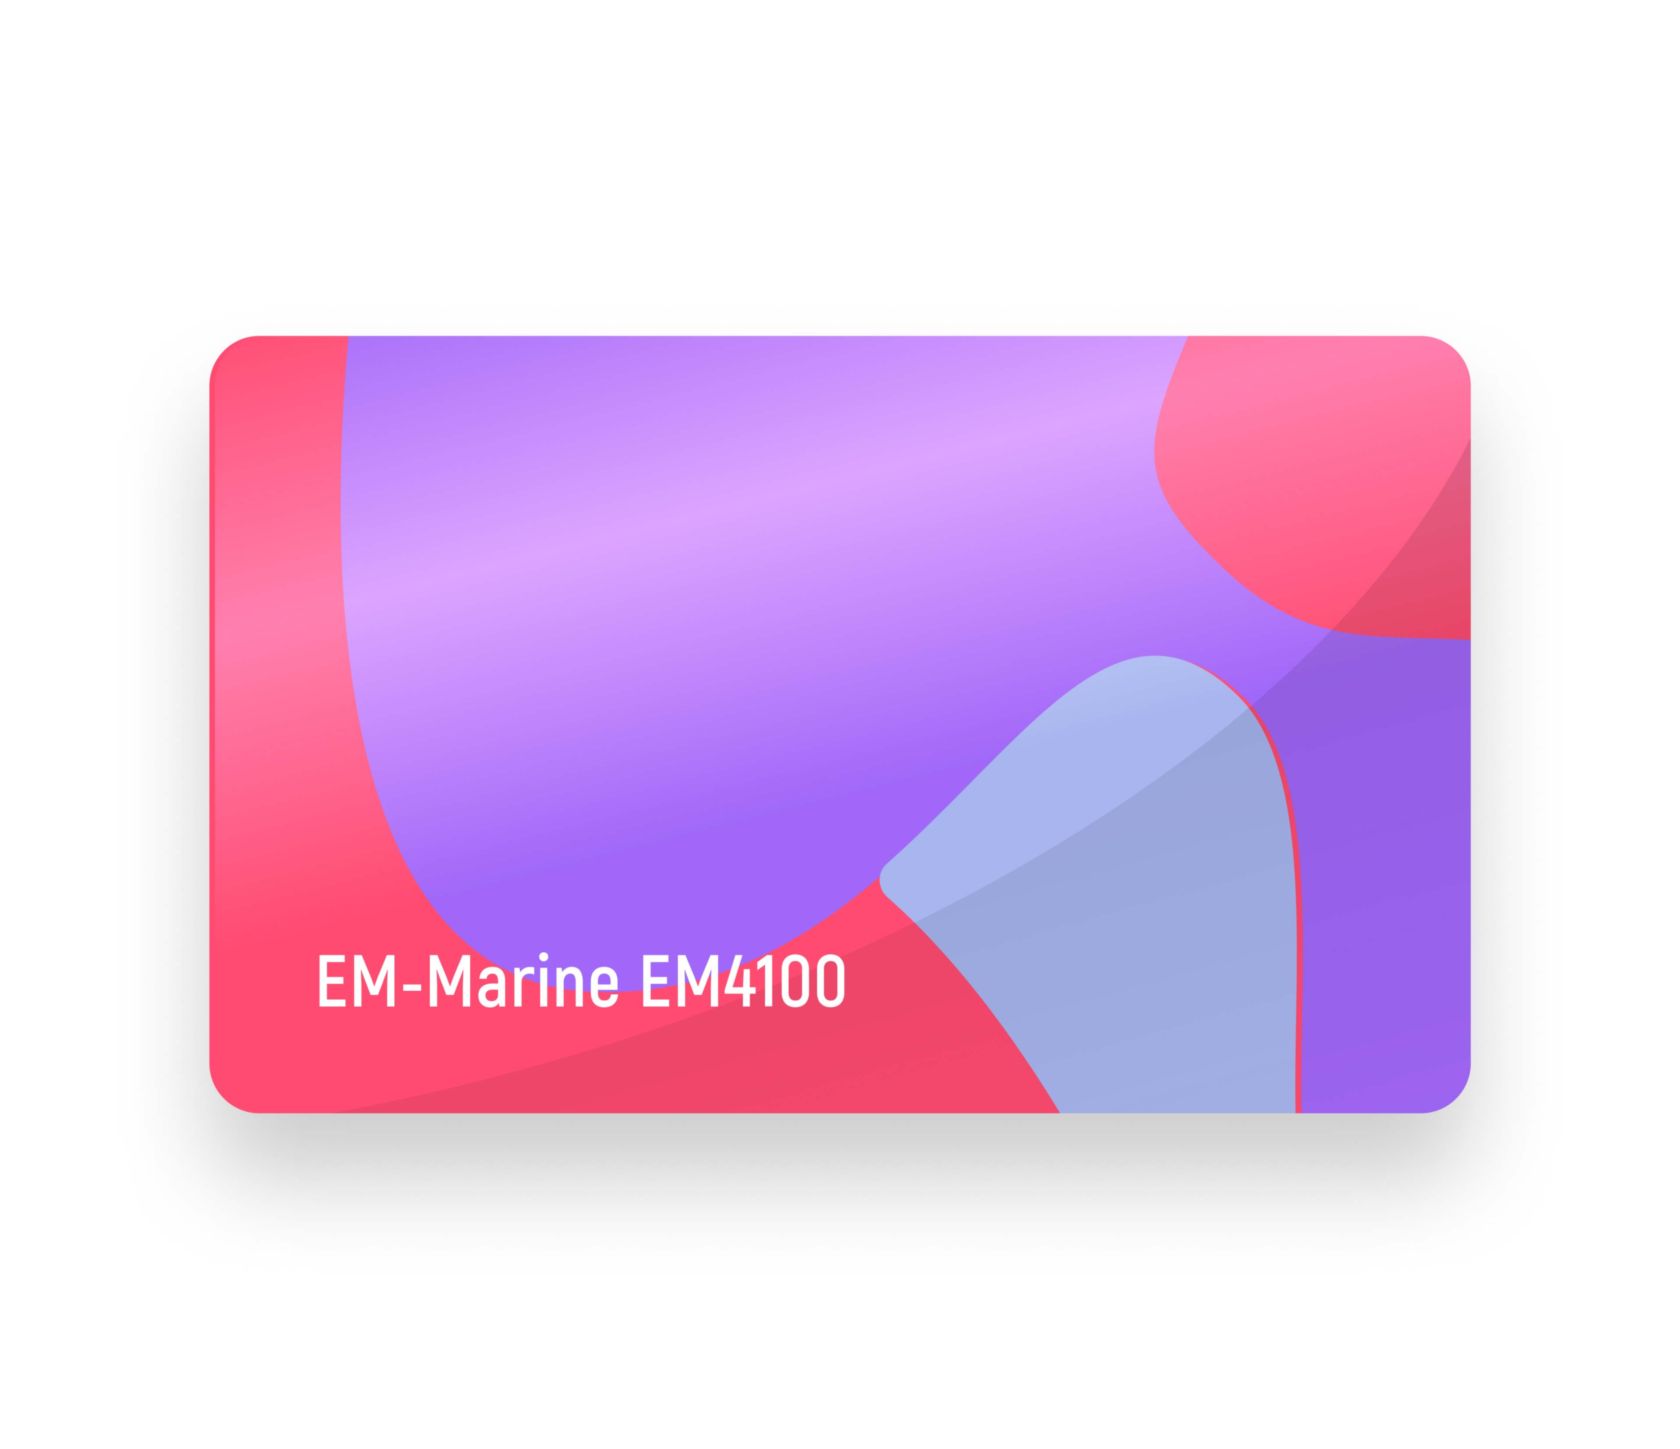 EM-Marine EM4100